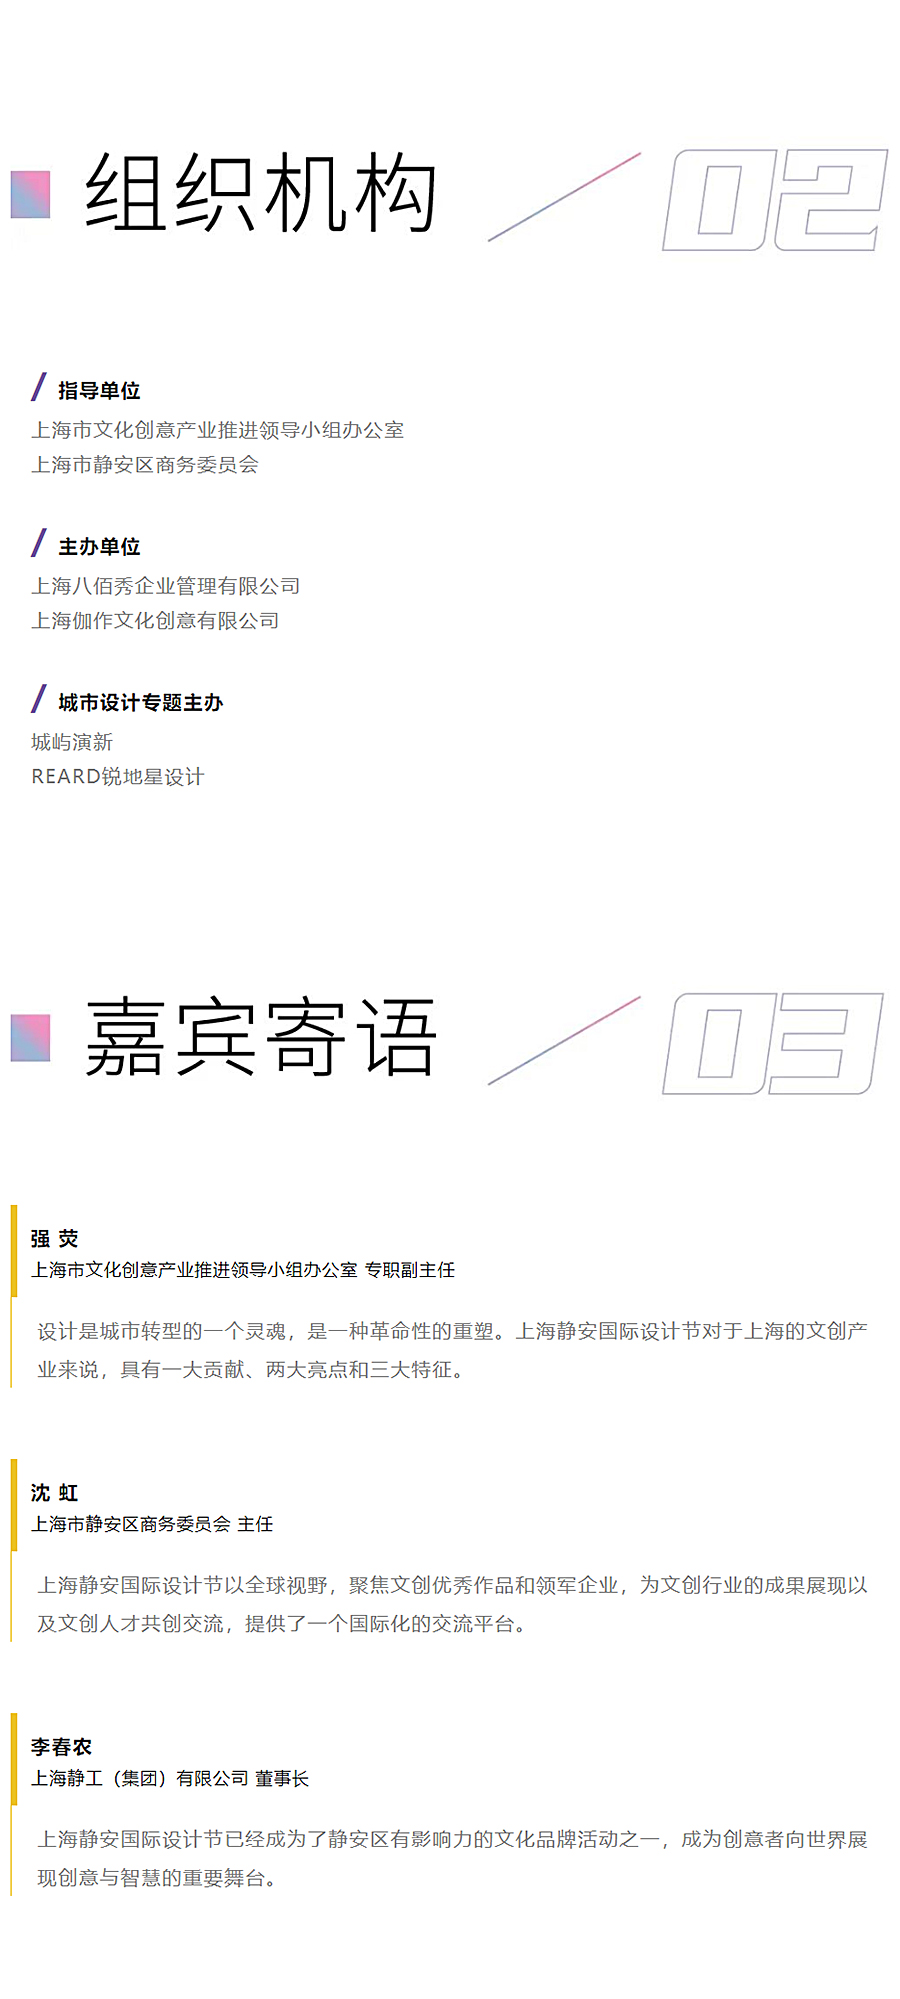 瞰见艺术的力量：上海静安国际设计节｜REARD城市更新设计节来袭_0003_图层-4.jpg